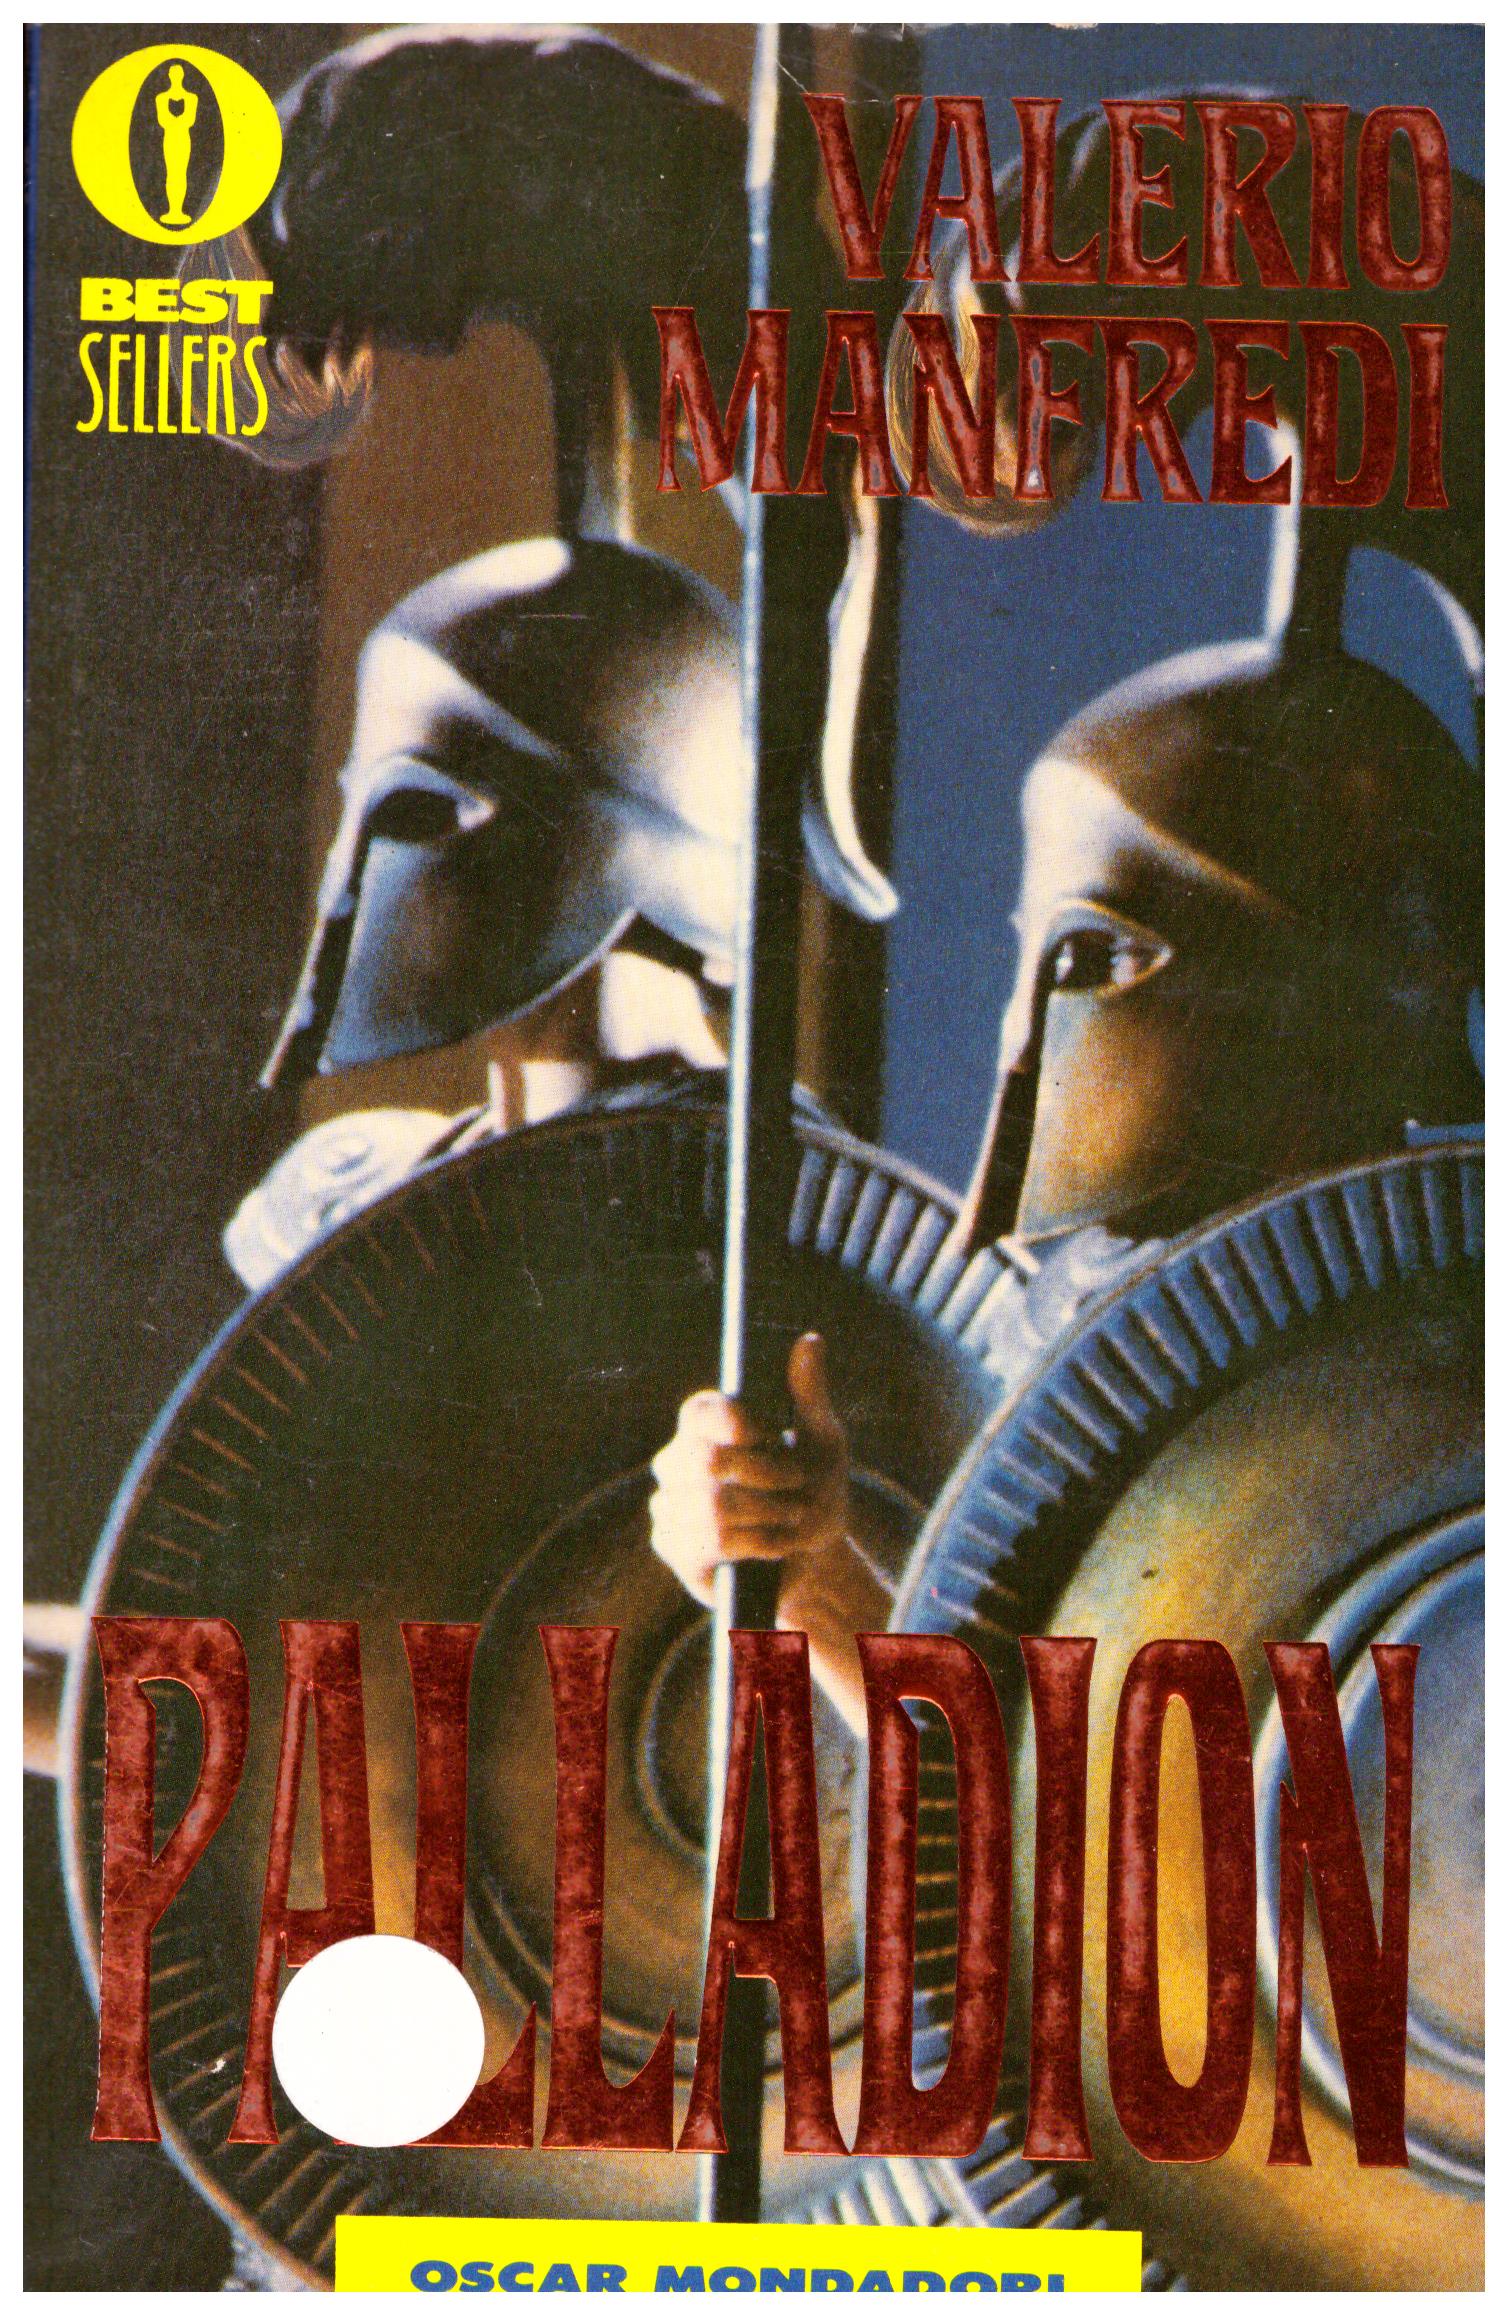 Titolo: Palladion Autore: Valerio Manfredi Editore: mondadori, 1985